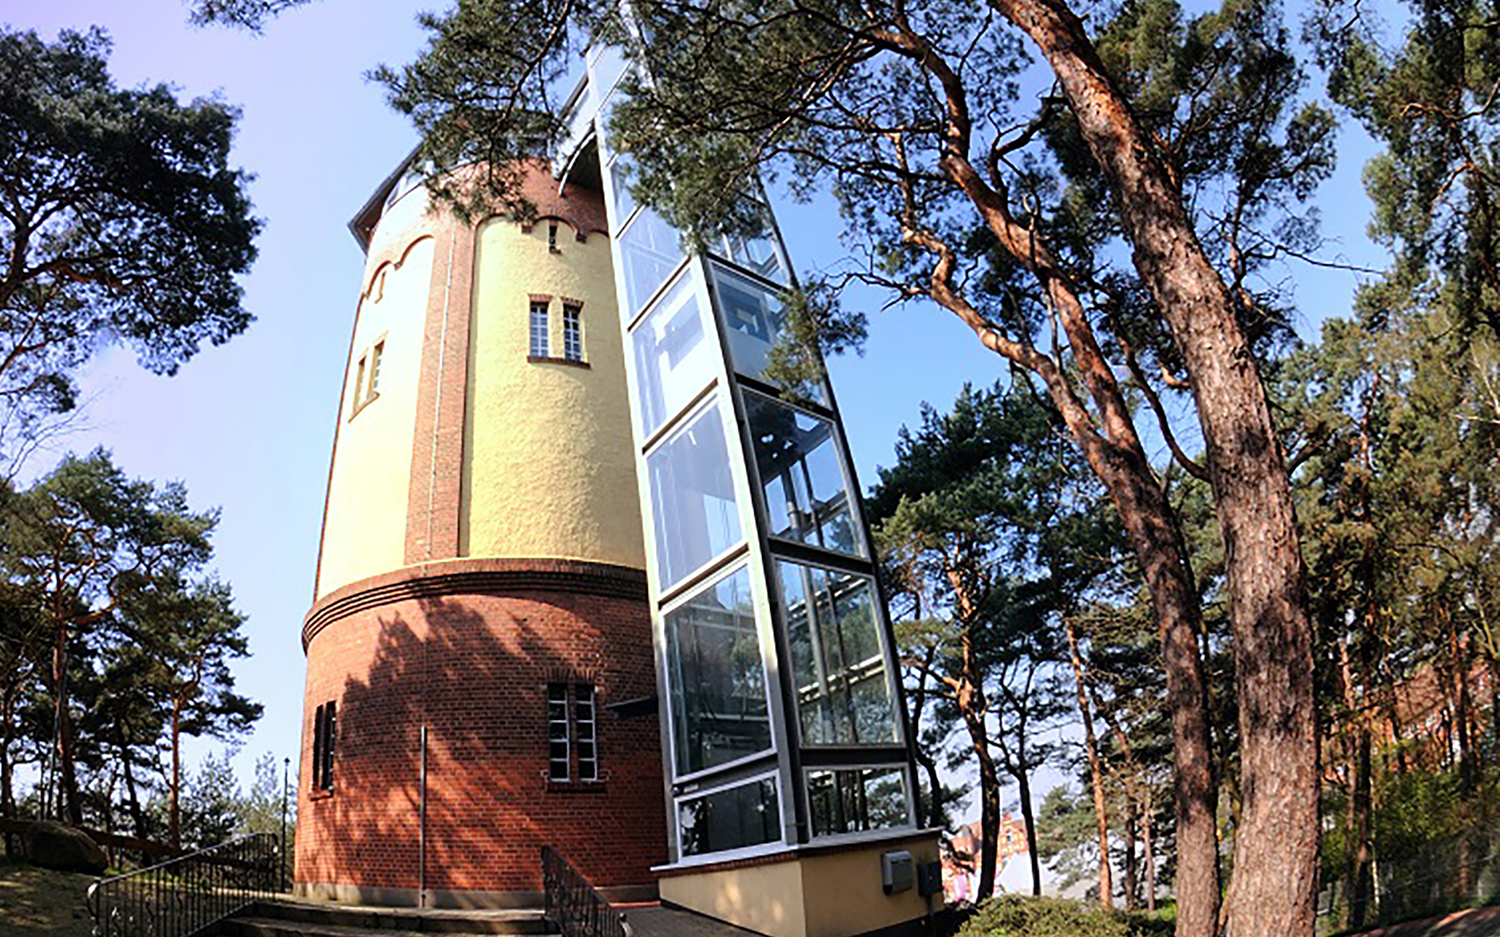 Panoramacafé im Wasserturm, Quelle: Südheide Gifhorn GmbH